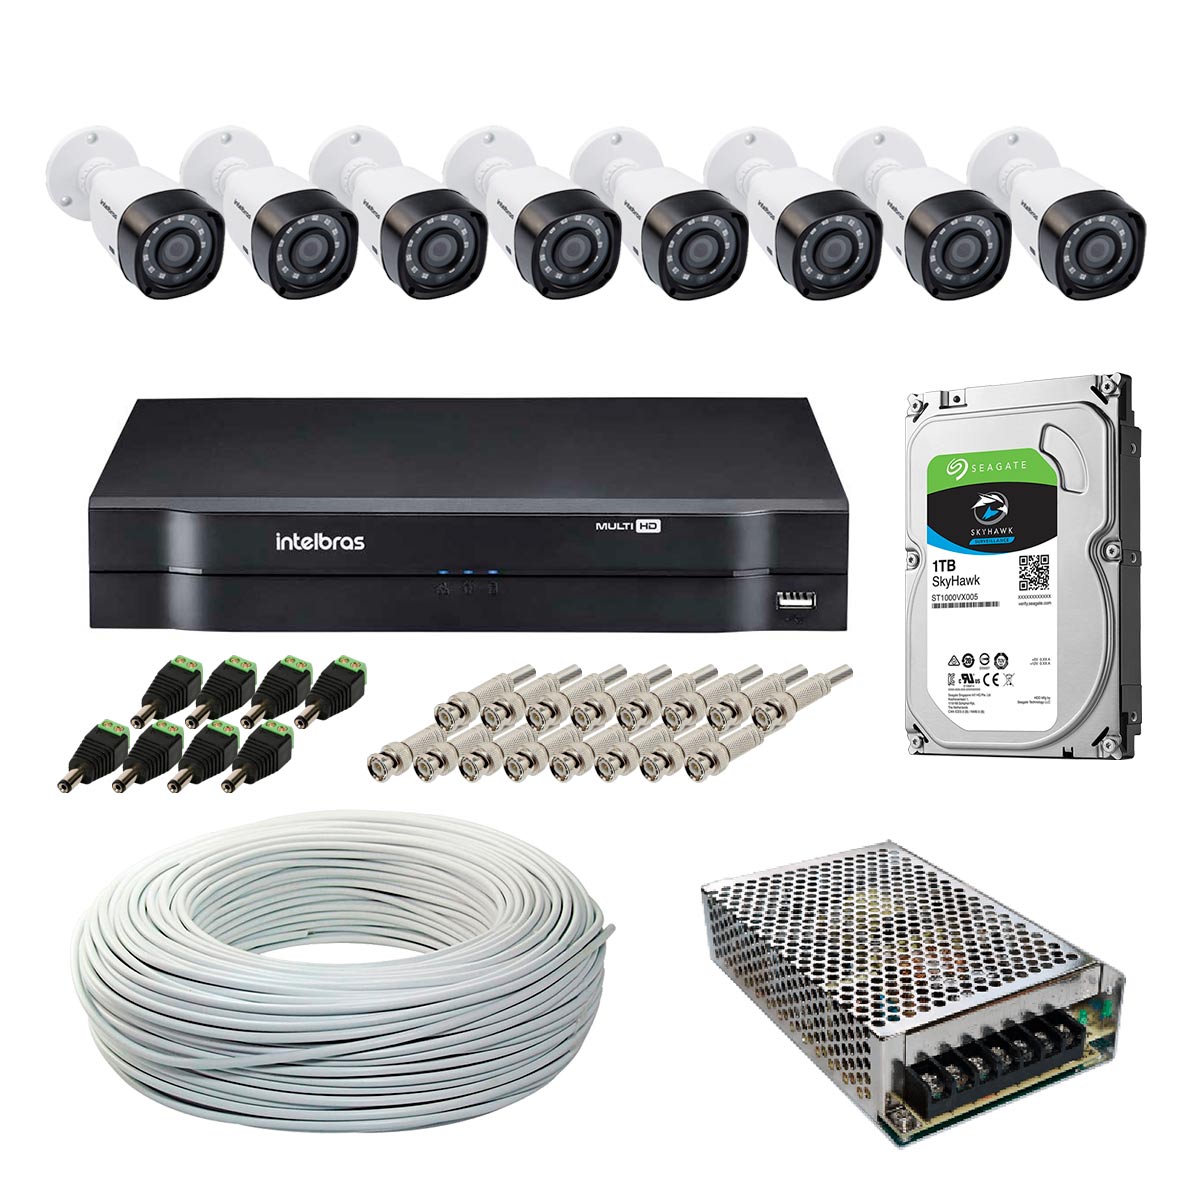 Kit CFTV Intelbras - DVR 16 Canais MHDX 1116, 8 Câmeras Bullet VHD 1120 B G5, HD 1TB, Fonte Chaveada, Cabo Coaxial 100 metros, 8 Plugs P4 Macho + 16 Conectores BNC Macho